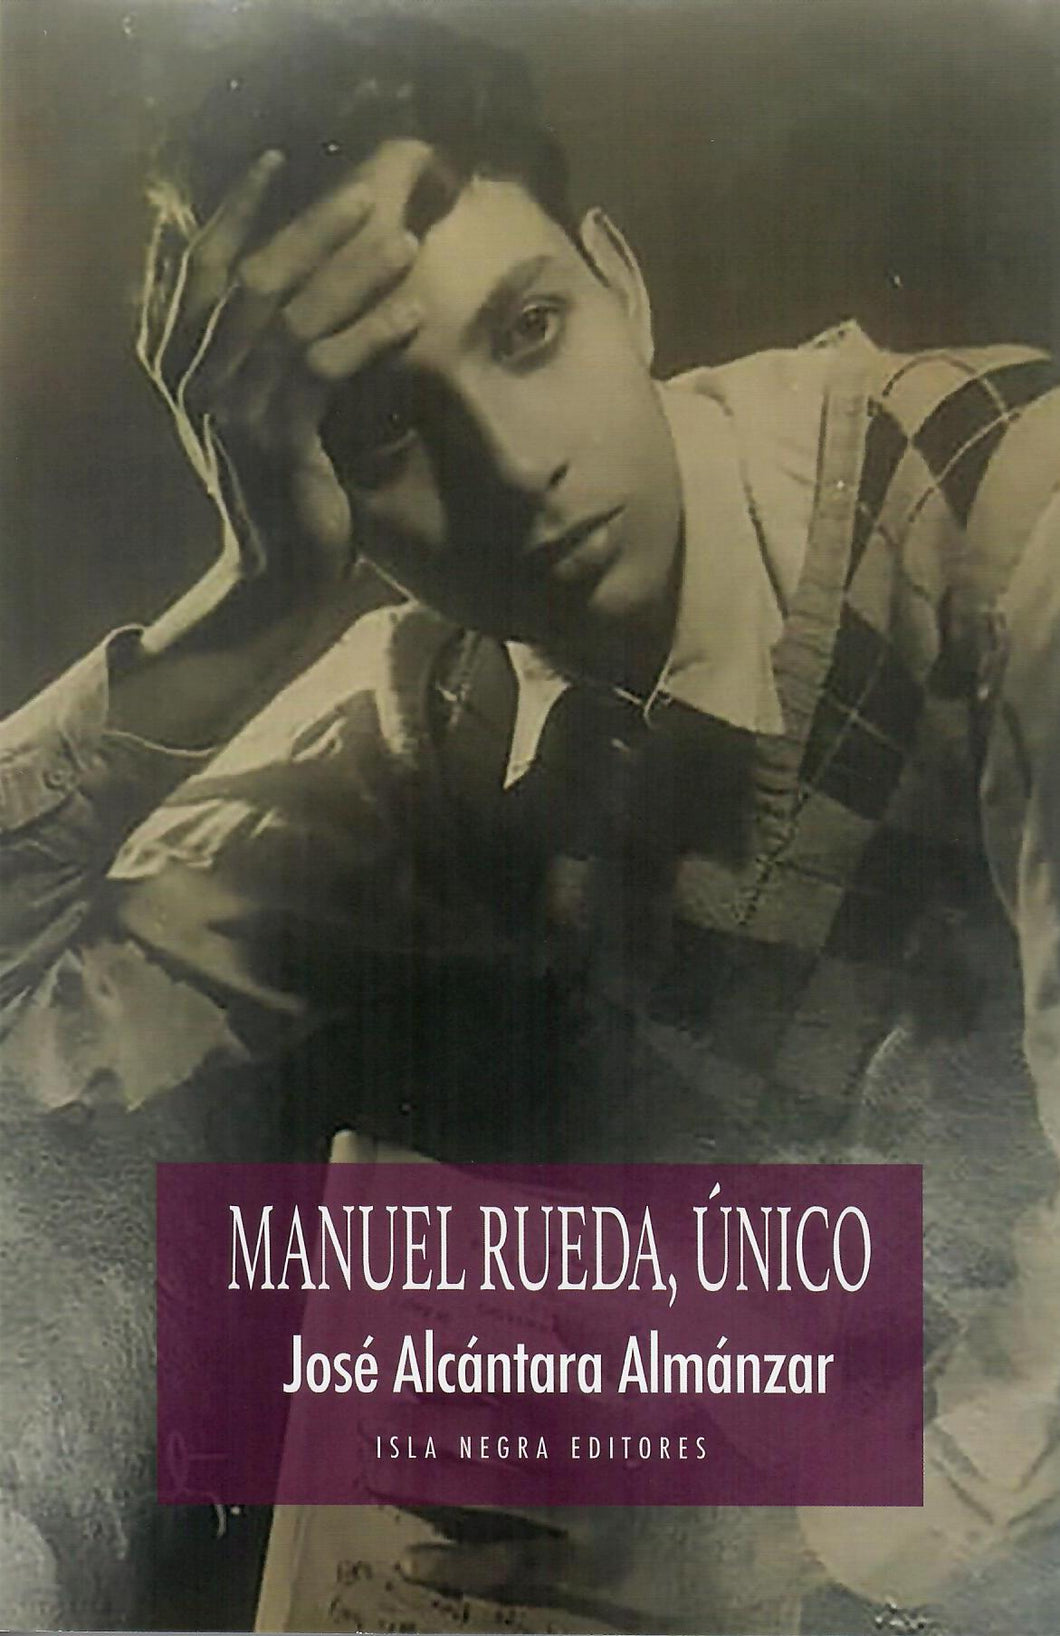 MANUEL RUEDA, ÚNICO - José Alcántara Almánzar